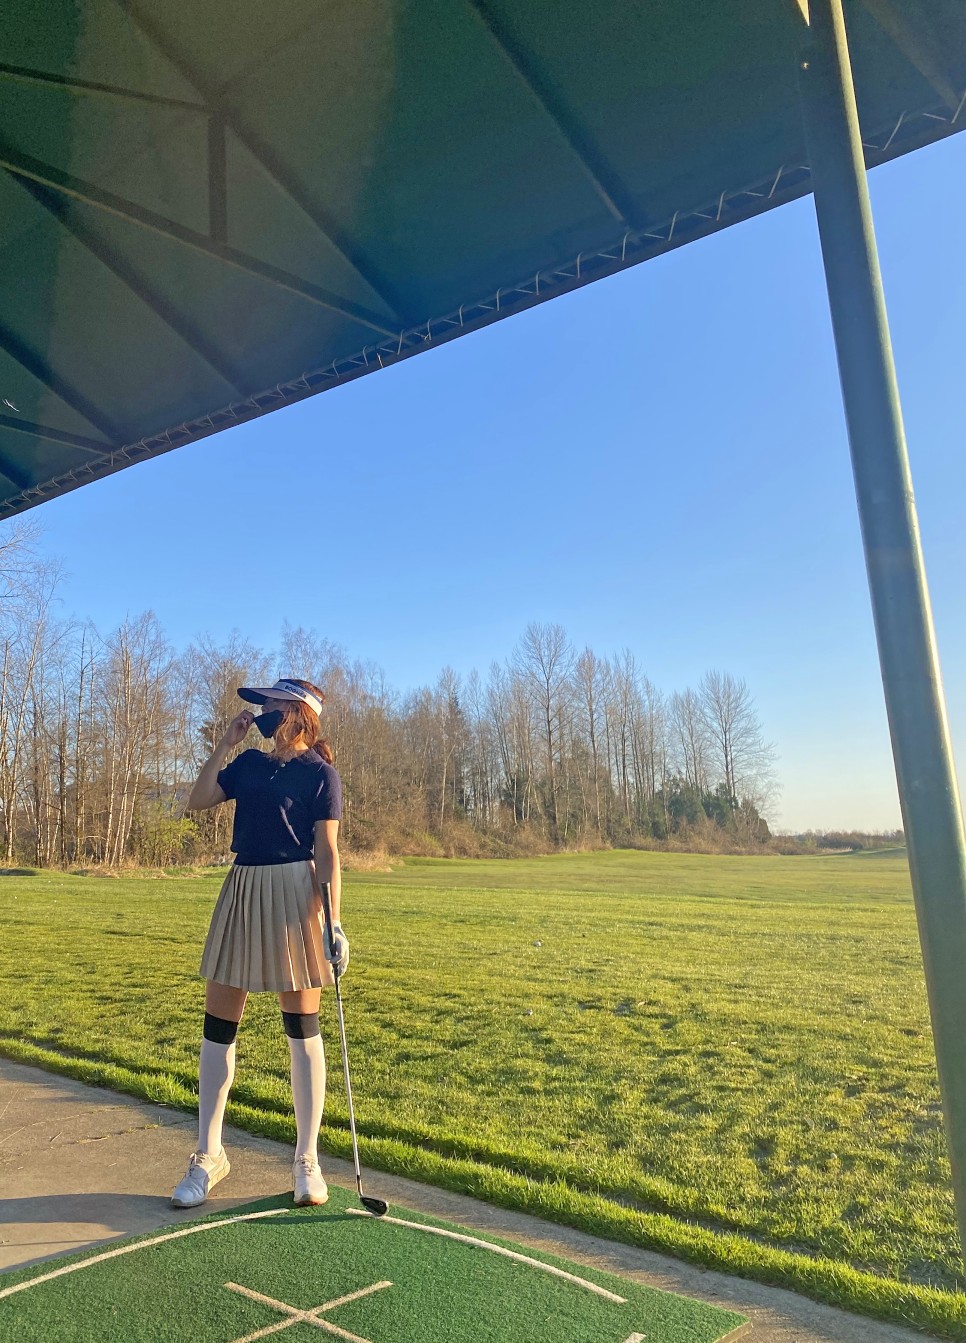 밴쿠버 골프시즌 is back! 벚꽃명소 열일중 Swaneset golf course (Vancouver 일상)